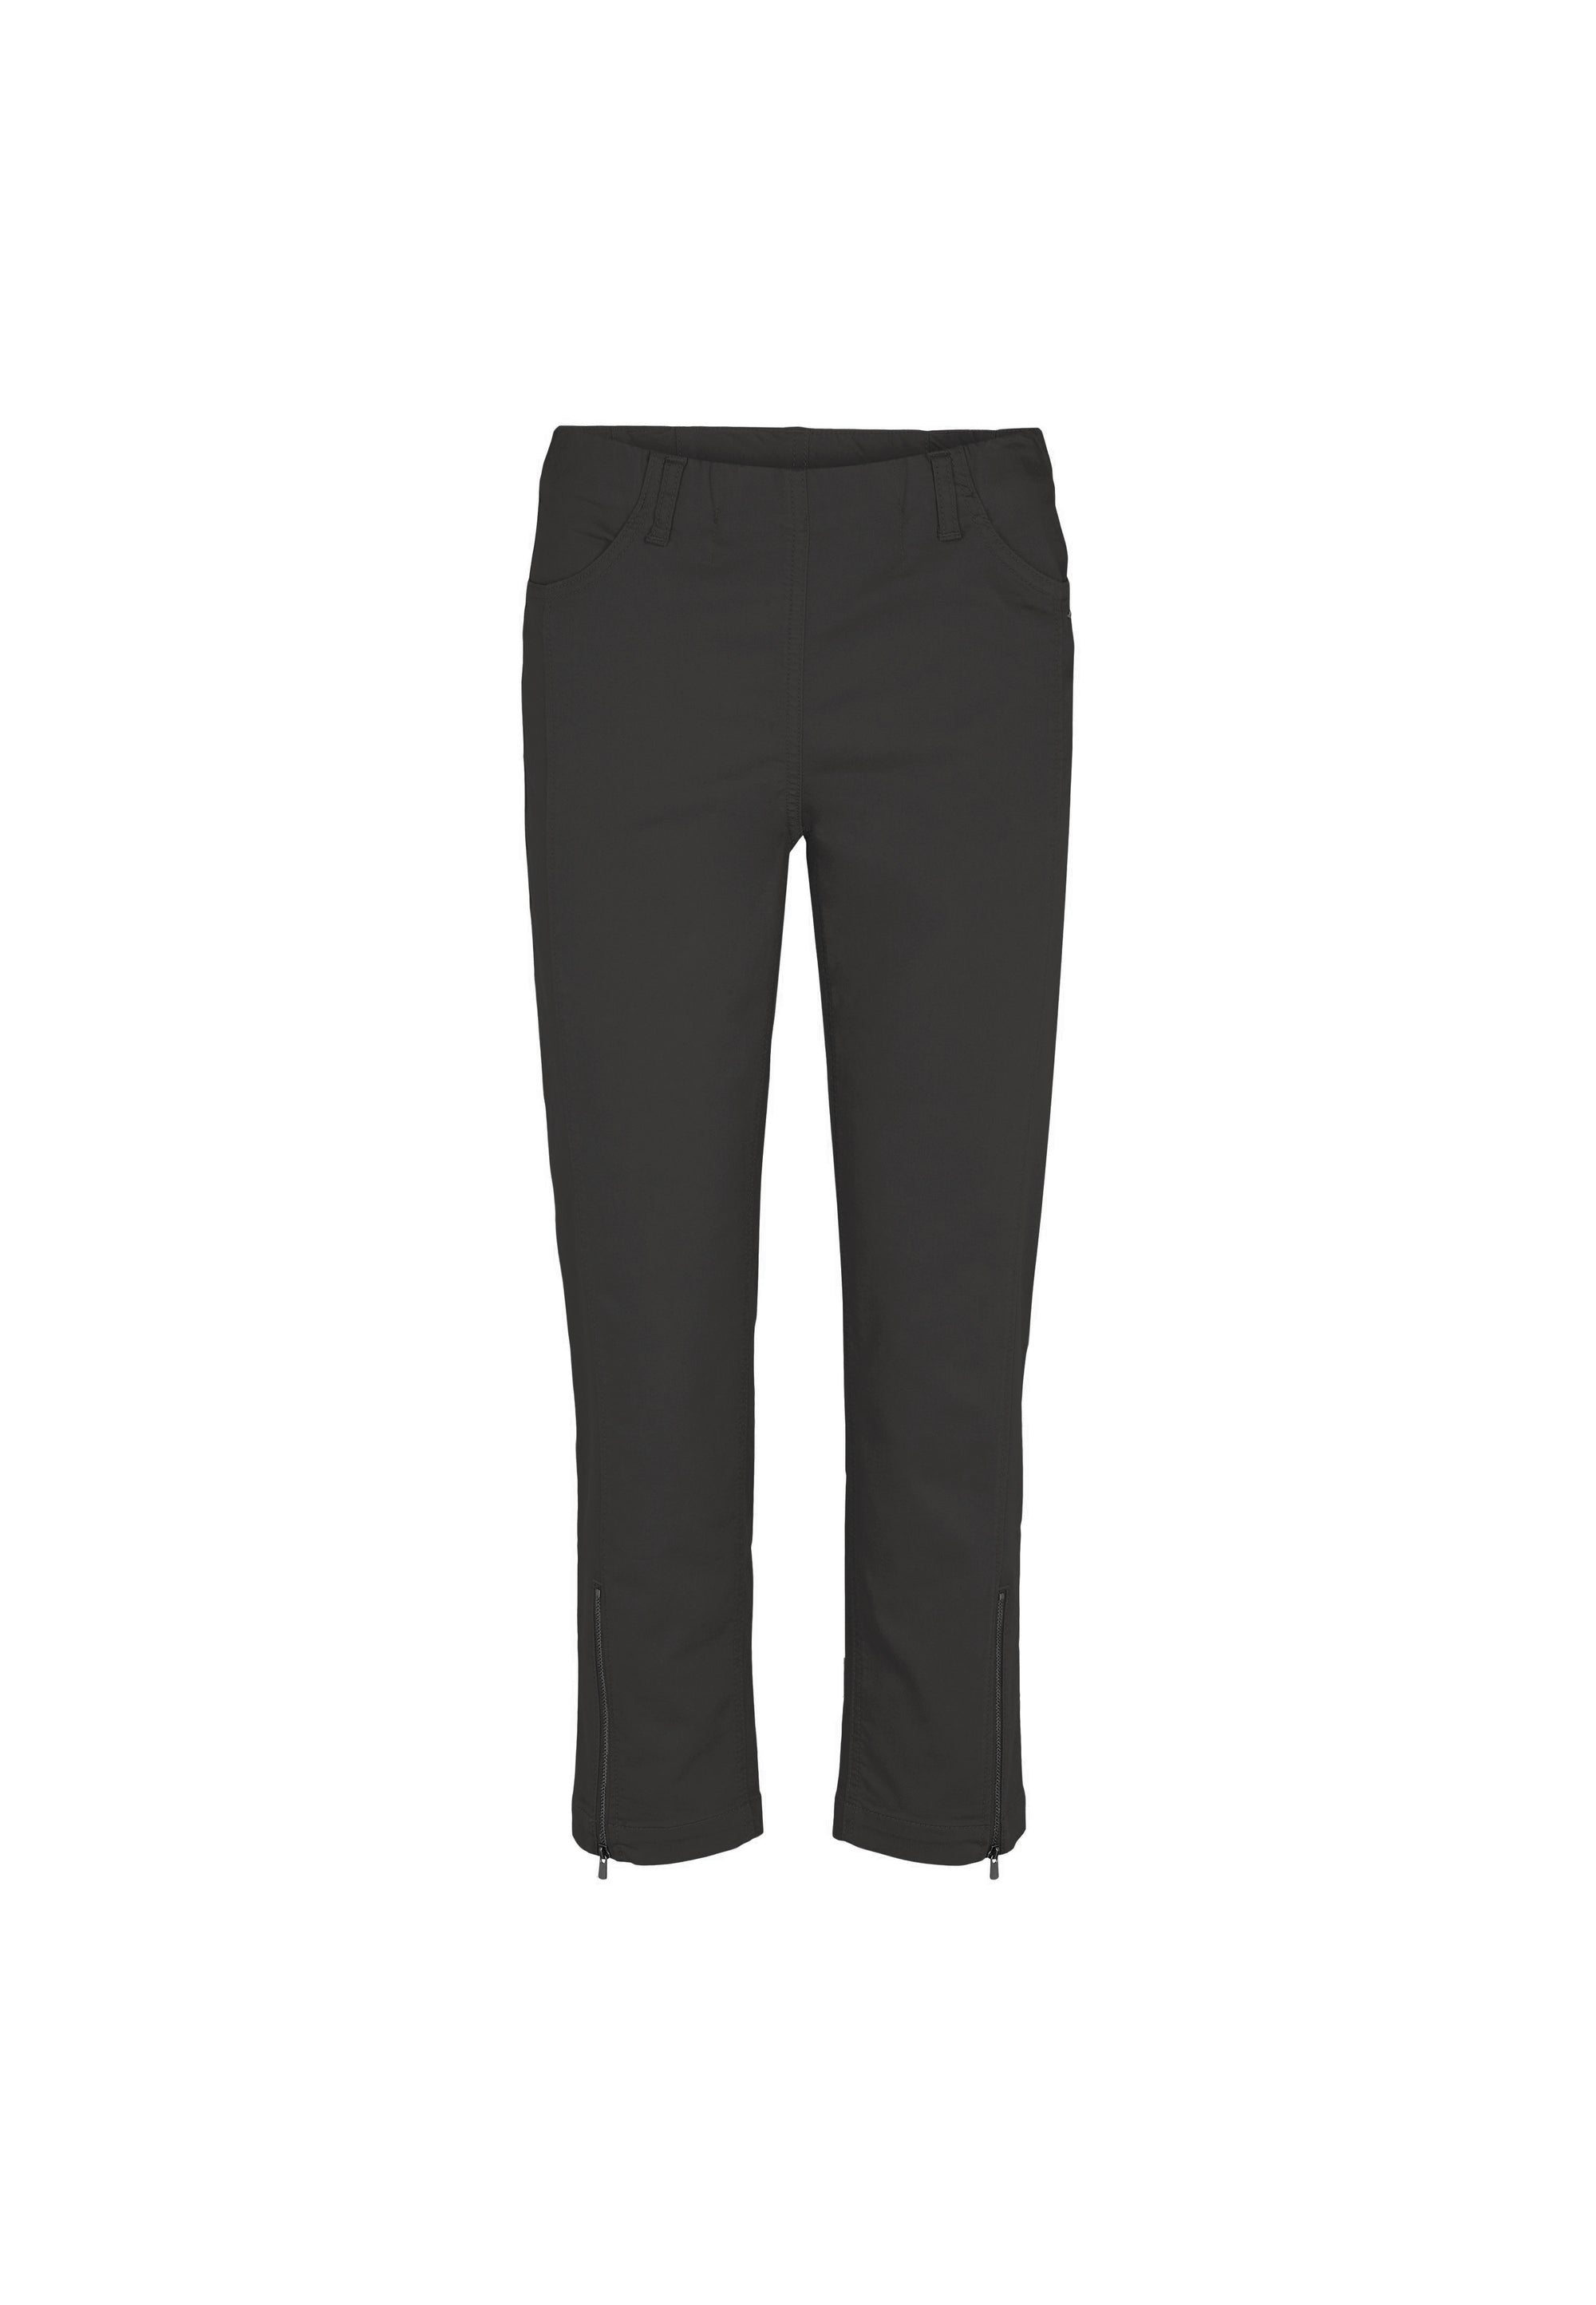 LAURIE Piper Regular Crop Trousers REGULAR 99100 Black